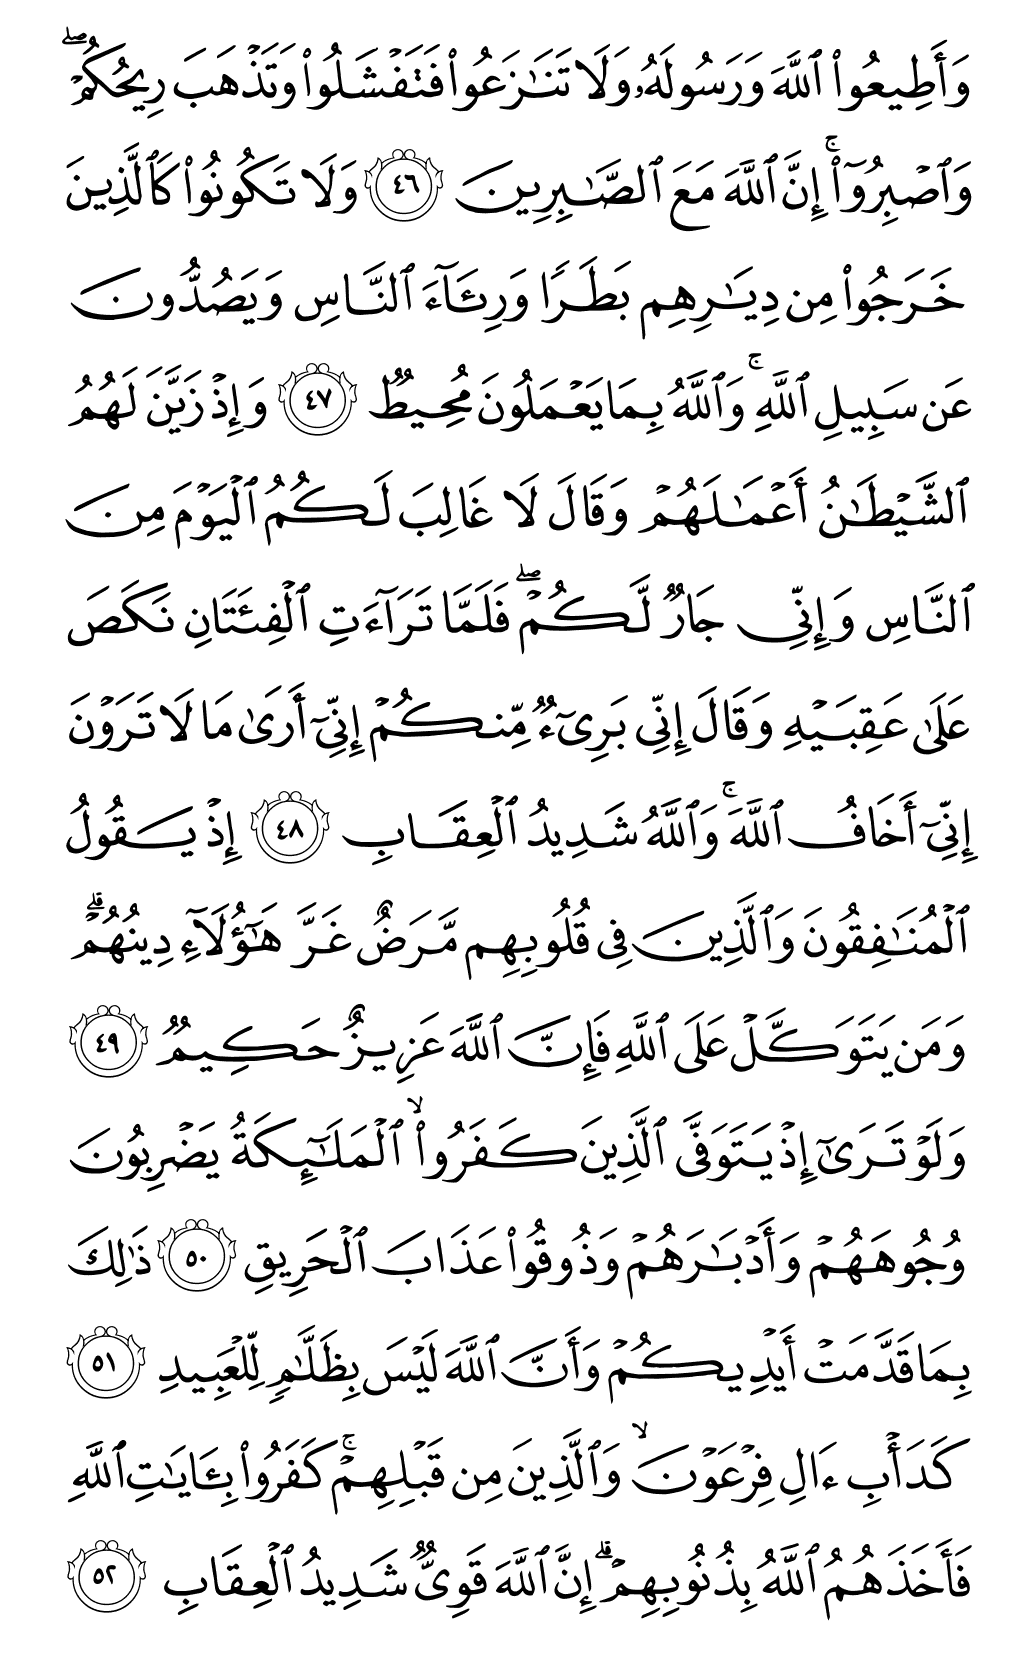 الصفحة رقم 183 من القرآن الكريم